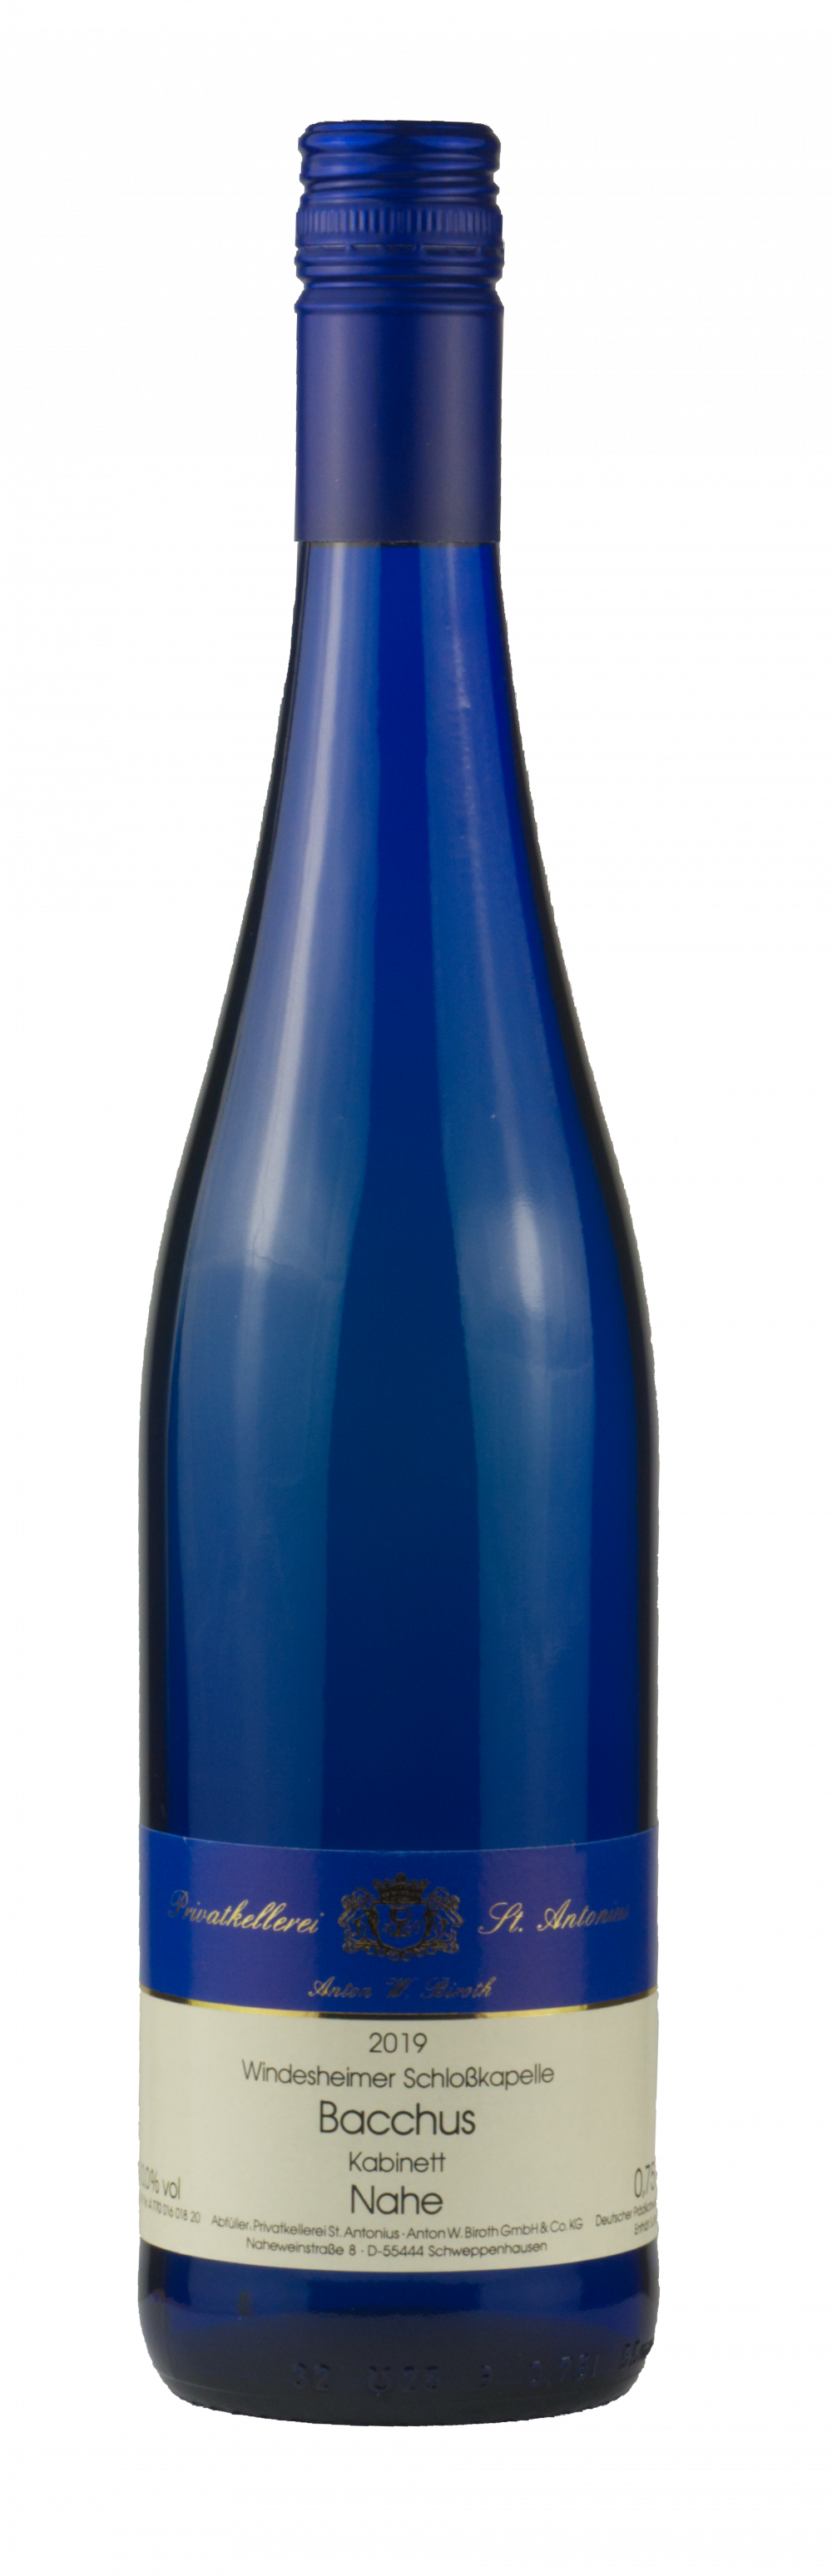 Burg Layer Schlosskapelle Bacchus Qba 2018(Blue bottle)